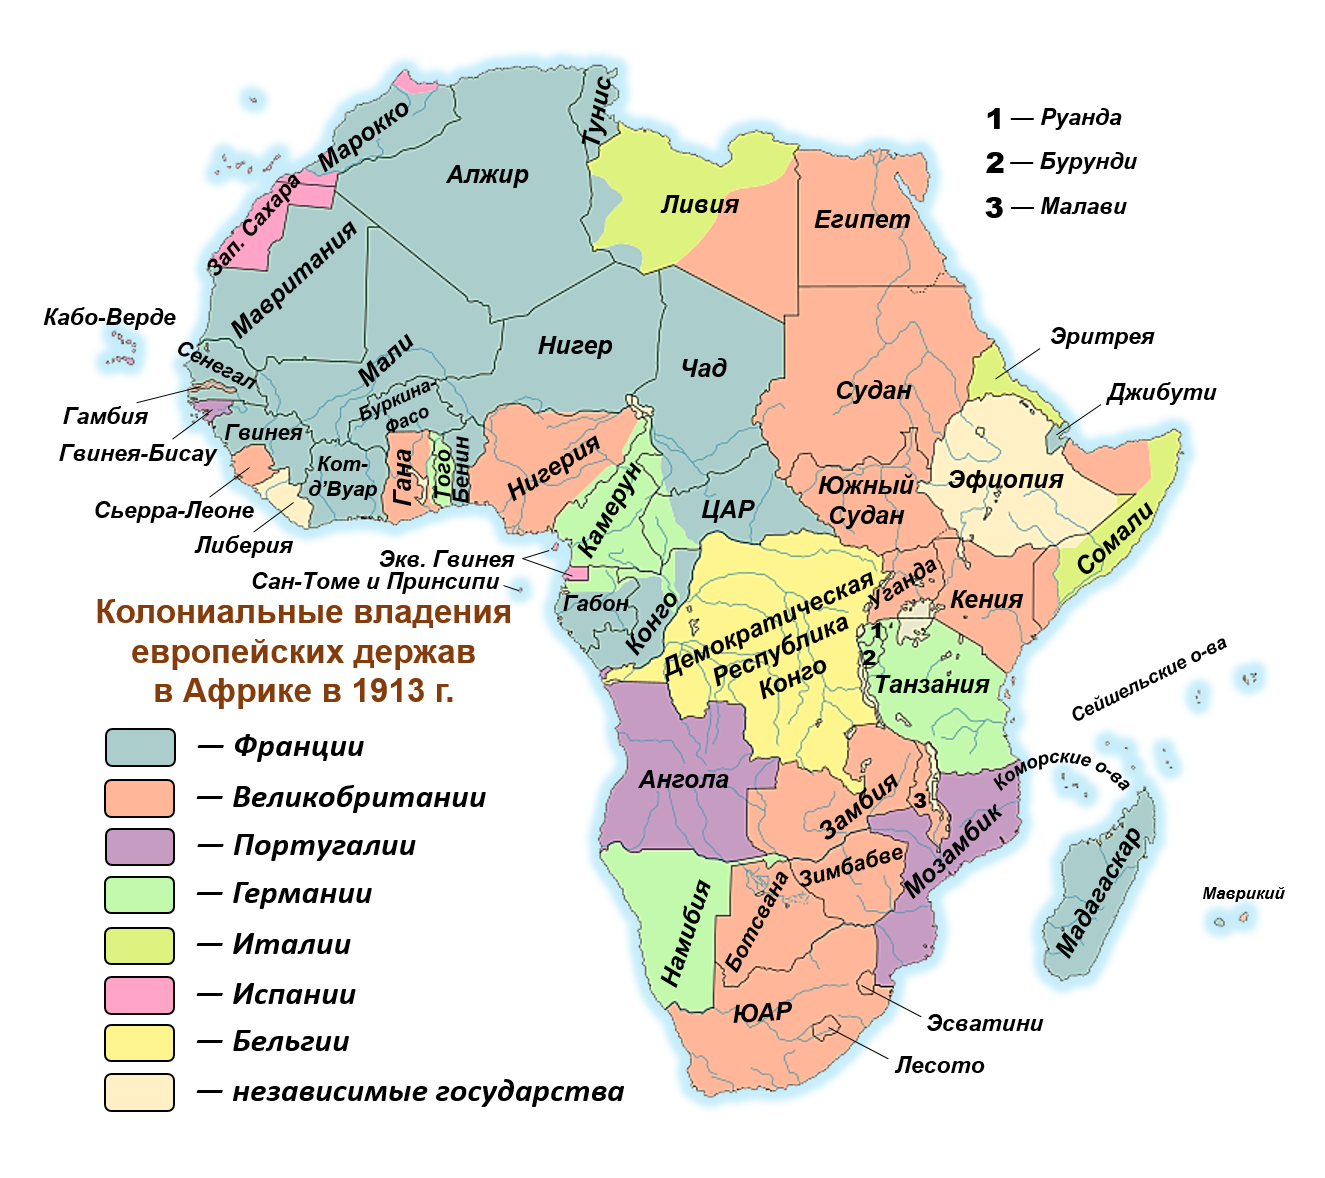 Африка по размерам территории занимает место. Колониальный раздел Африки в 19 веке карта. Карта колоний Африки. Карта колоний в Африке 19 век. Колониальный раздел Африки в начале 20 века.